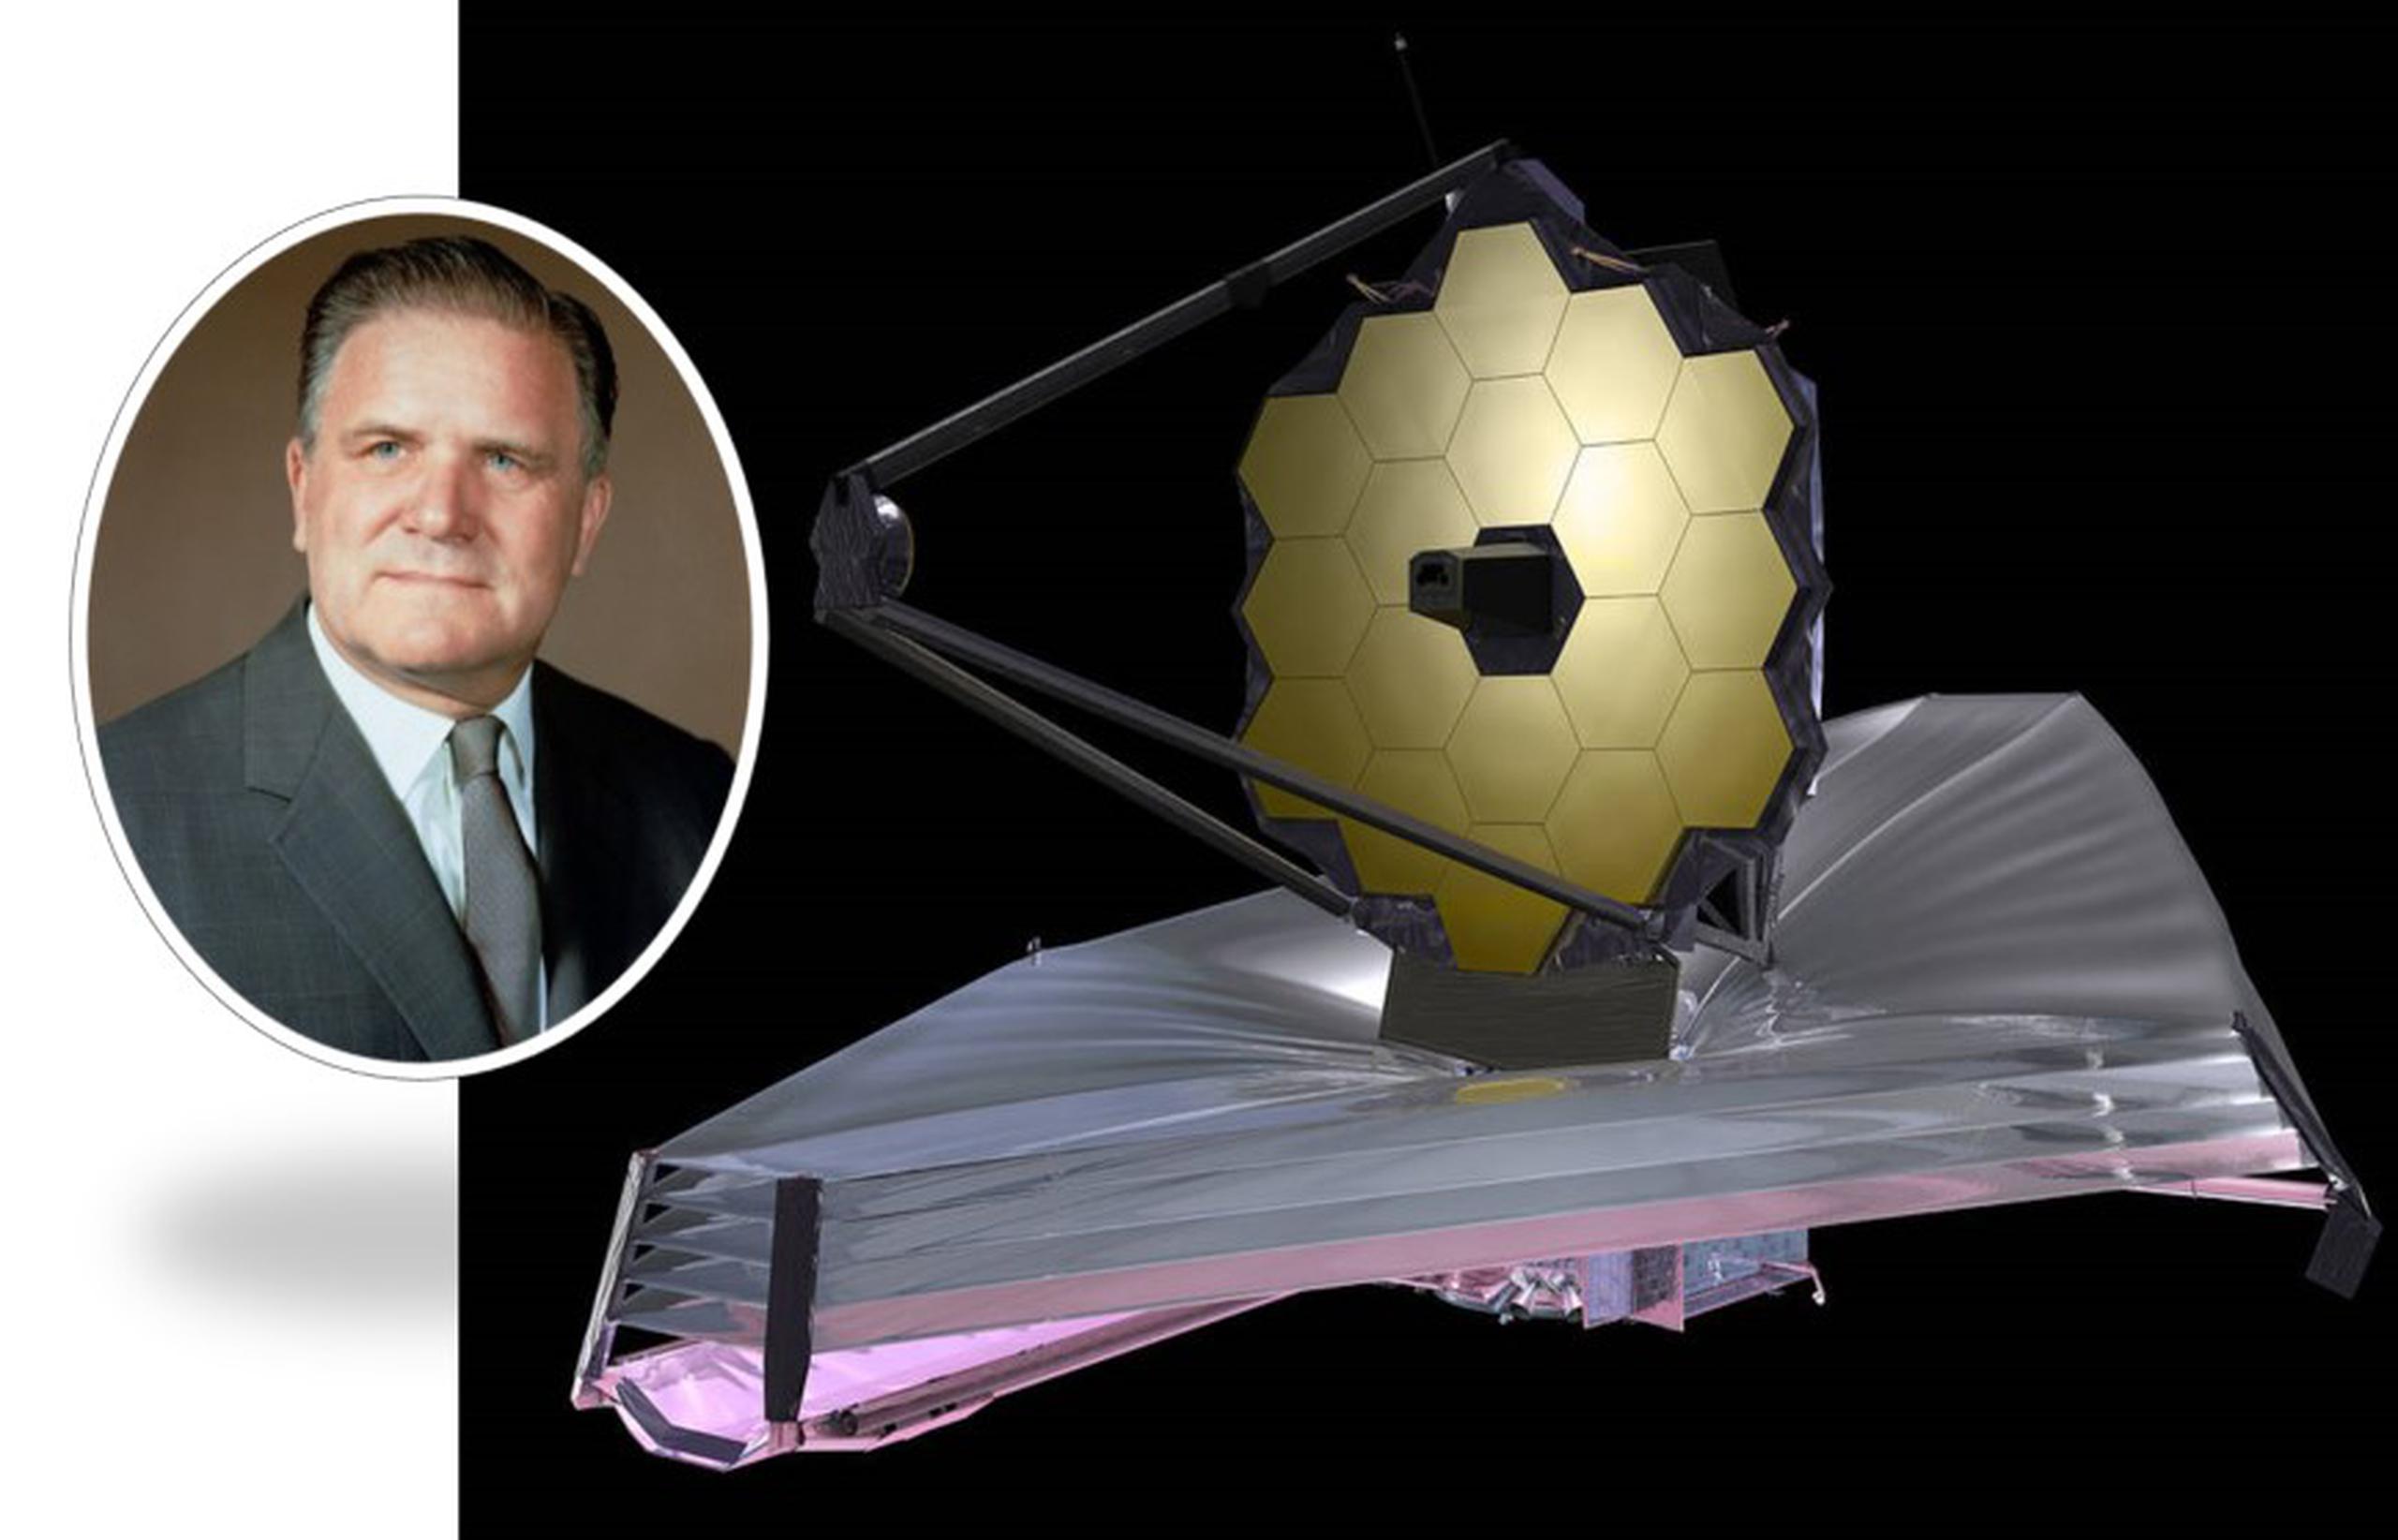 El Telescopio Espacial James Webb (JWST) se ha convertido en el proyecto astronómico más grande del programa civil estadounidense en décadas.